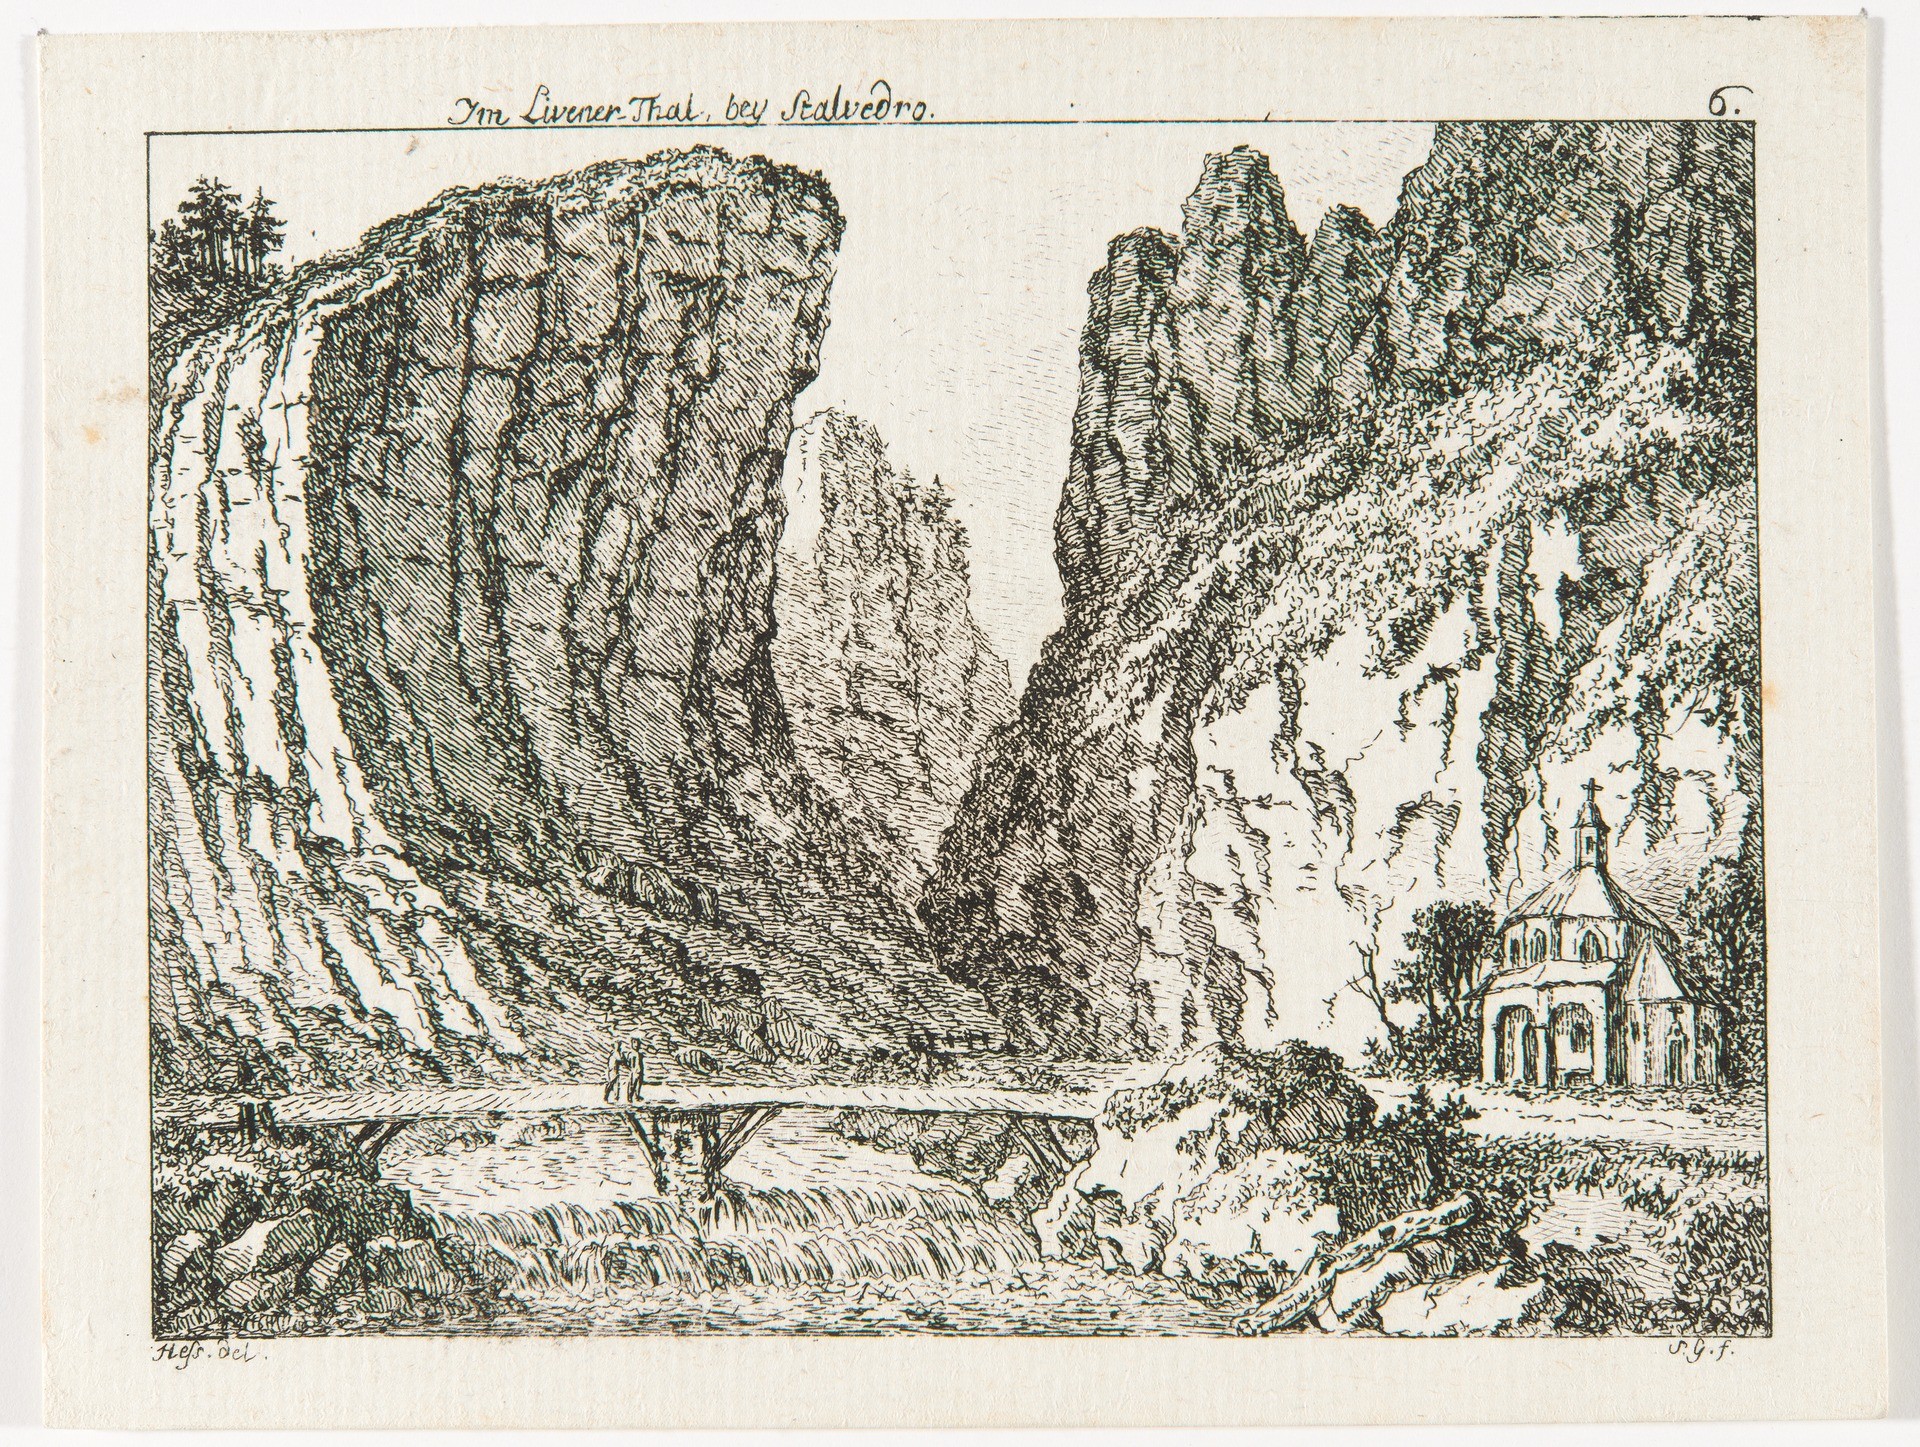 Die Kapelle von Stalvedro bei Airolo am südlichen Fuss des Gotthards, Salomon Gessner, 1786